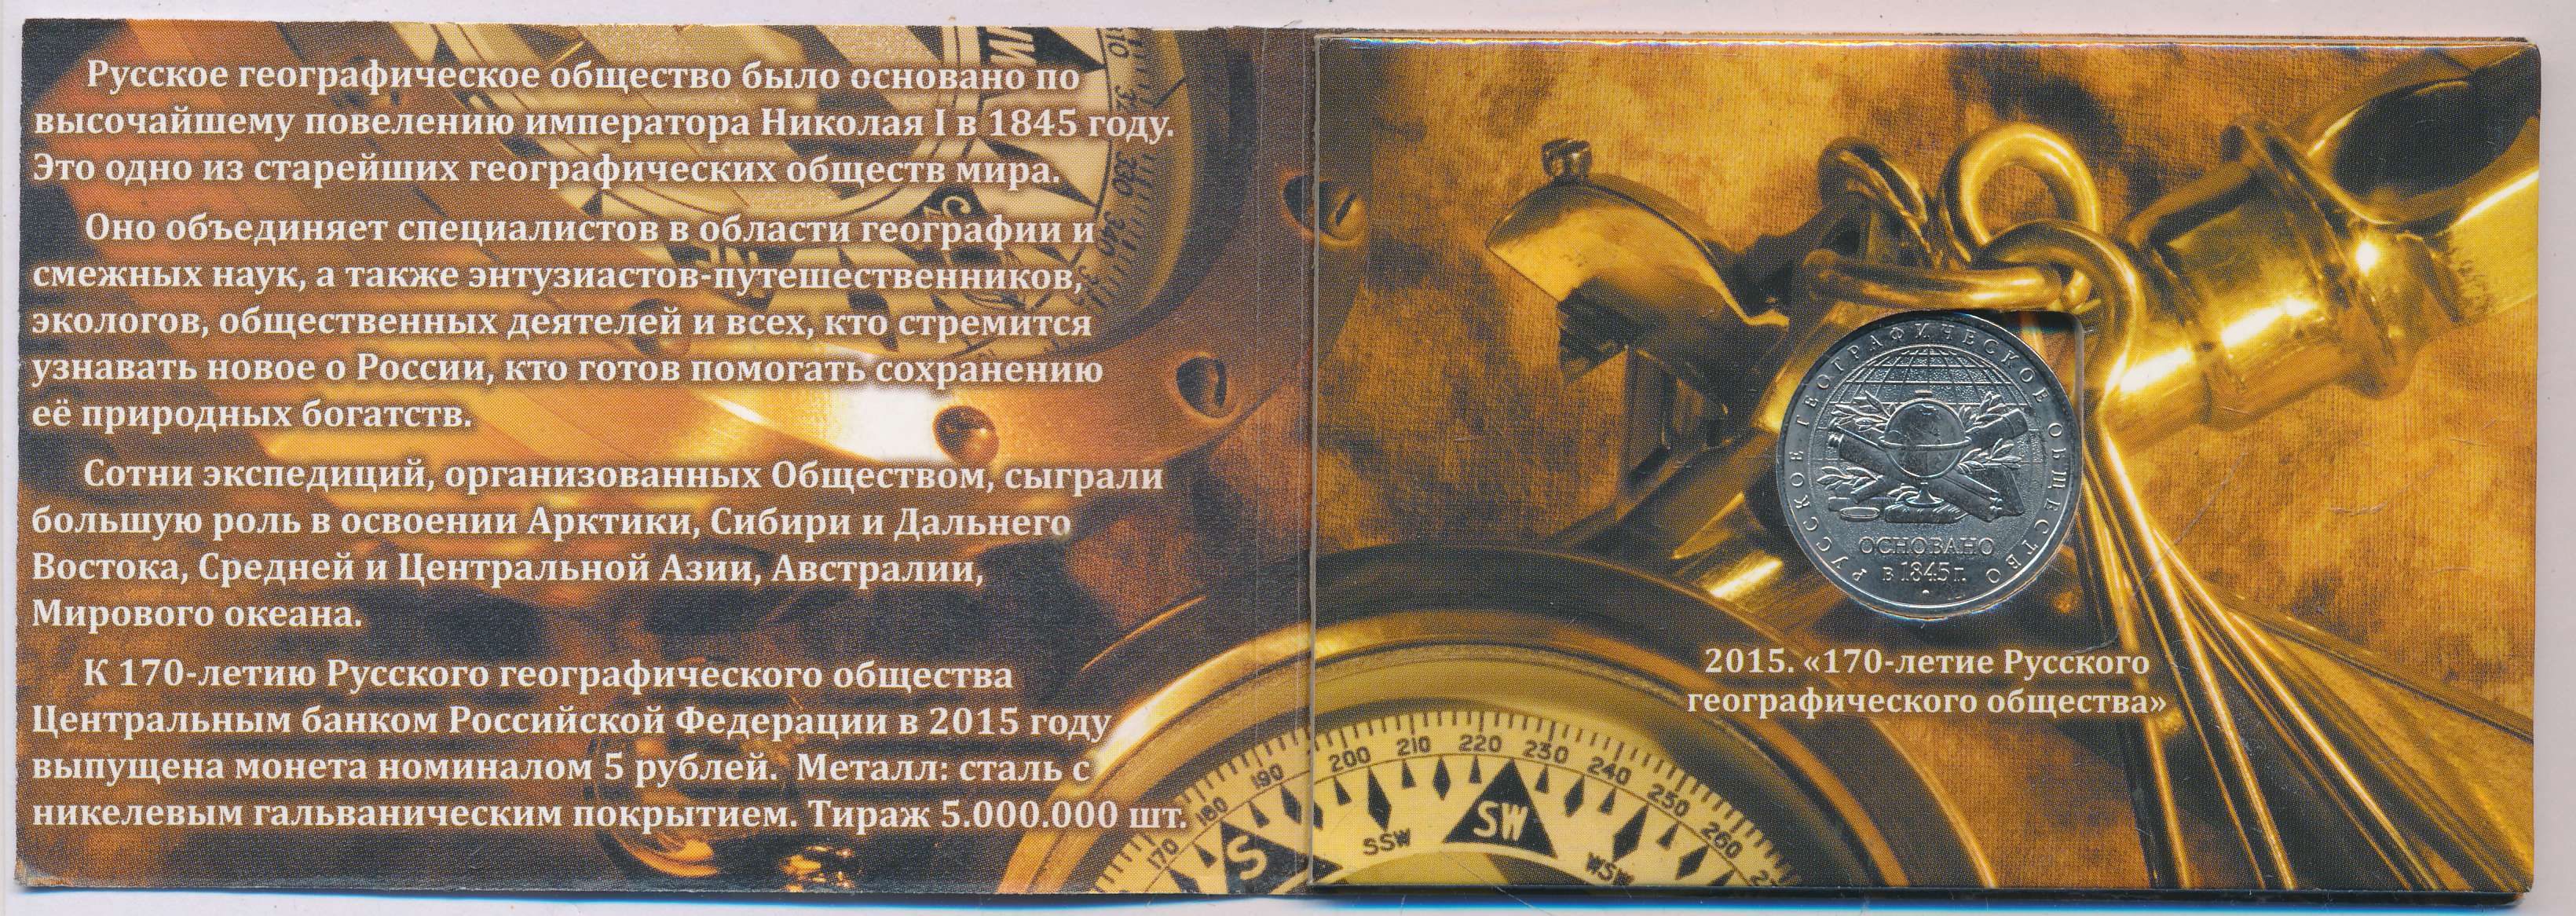 5 рублей географическое общество